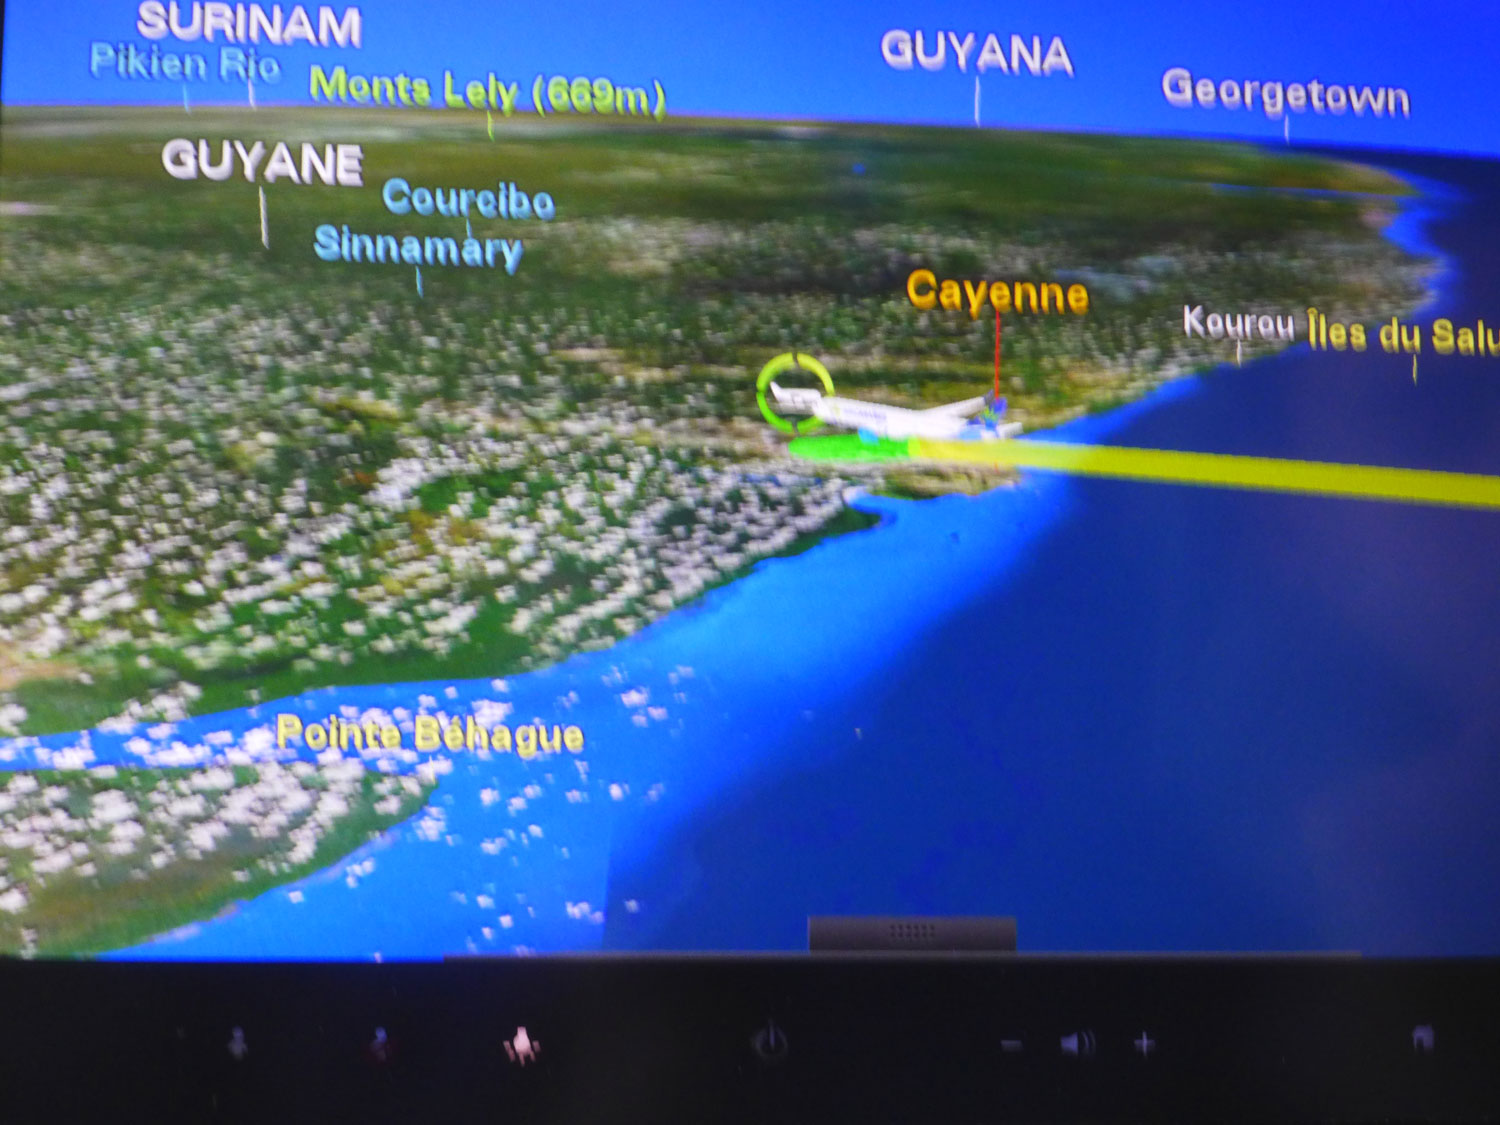 L’écran passager confirme que l’atterrissage en Guyane est imminent.